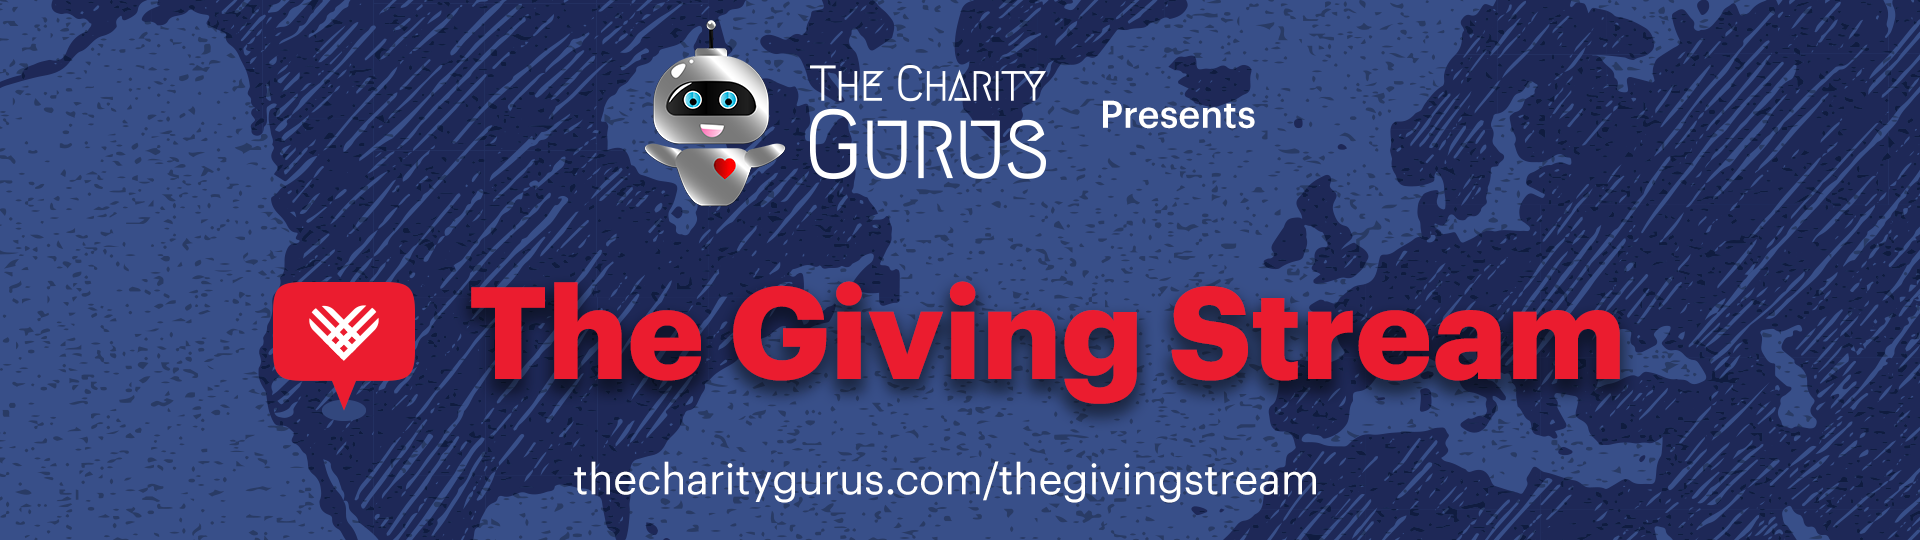 The Charity Gurus